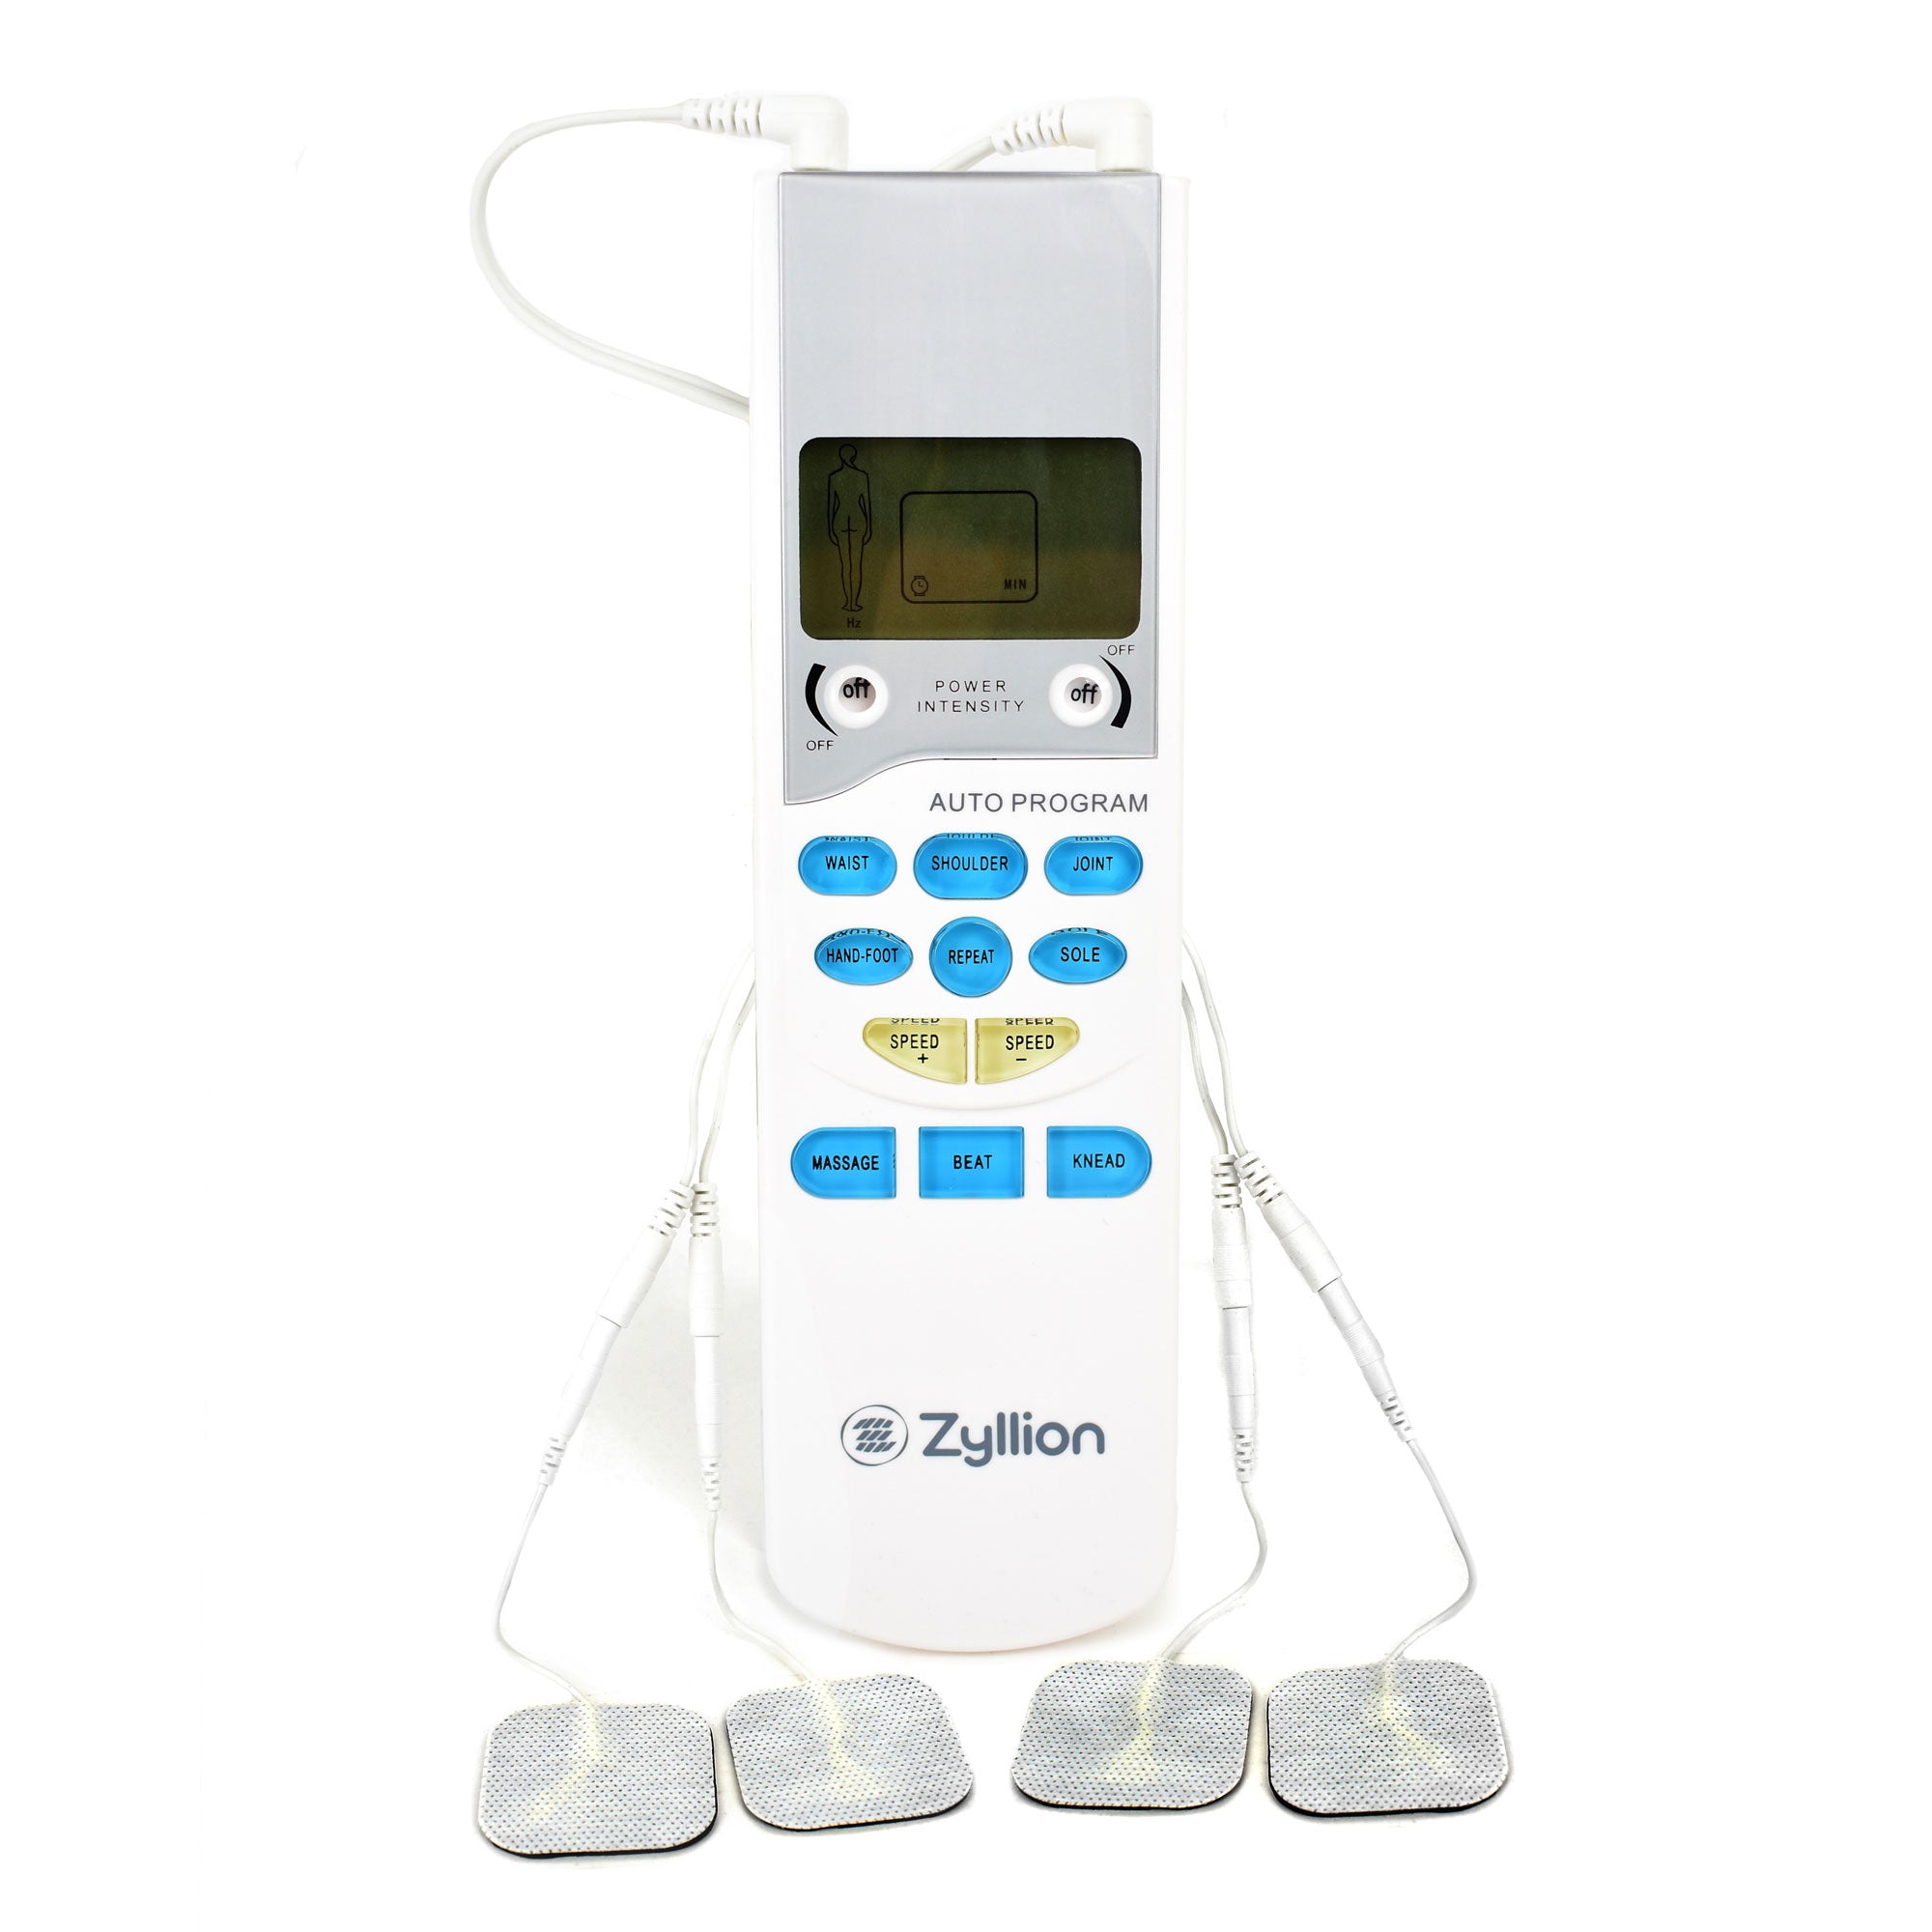 Qenwkxz Electronic Pulse Massager Muscle Stimulator Machine Dual